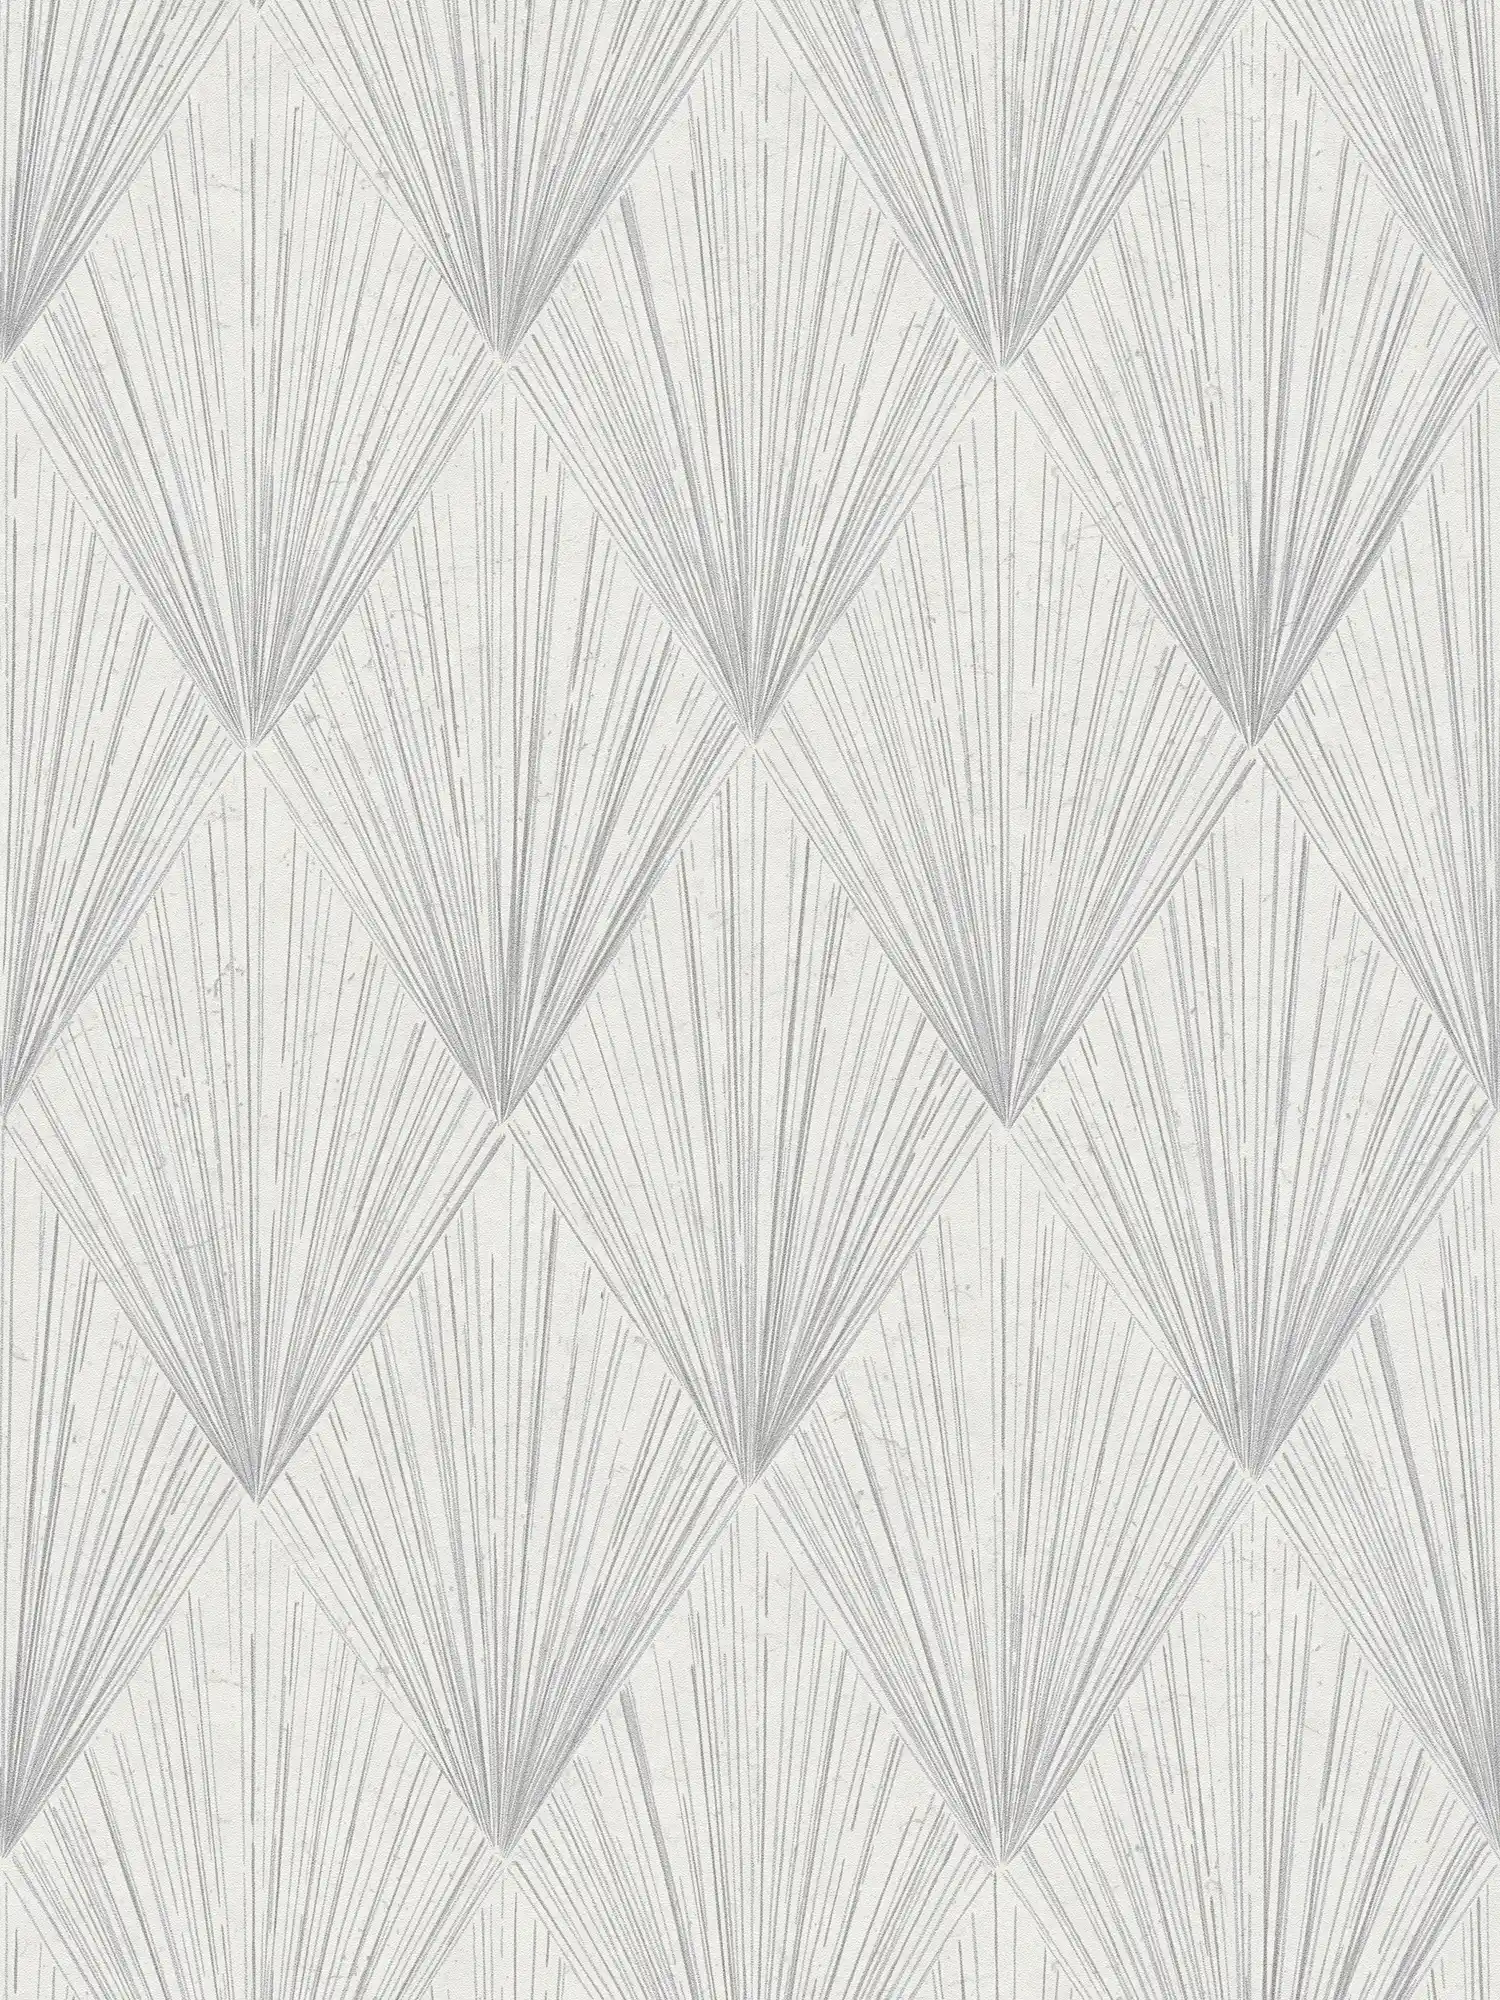         Mustertapete im modernen Art Déco Stil – Grau, Metallic, Weiß
    